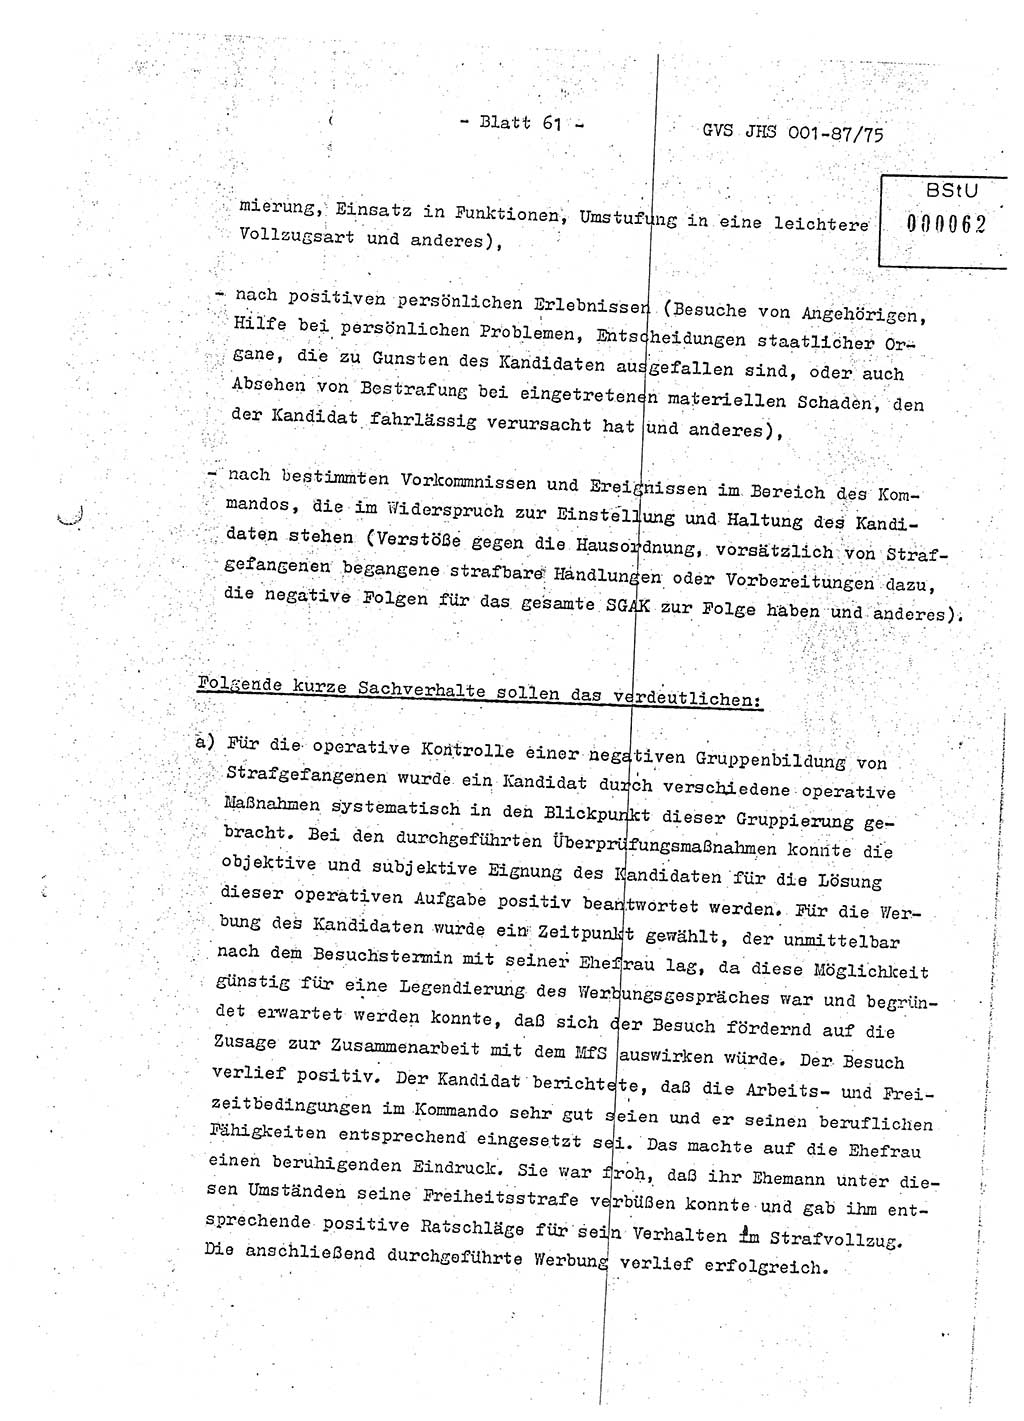 Diplomarbeit Hauptmann Volkmar Heinz (Abt. ⅩⅣ), Oberleutnant Lothar Rüdiger (BV Lpz. Abt. Ⅺ), Ministerium für Staatssicherheit (MfS) [Deutsche Demokratische Republik (DDR)], Juristische Hochschule (JHS), Geheime Verschlußsache (GVS) o001-87/75, Potsdam 1975, Seite 61 (Dipl.-Arb. MfS DDR JHS GVS o001-87/75 1975, S. 61)